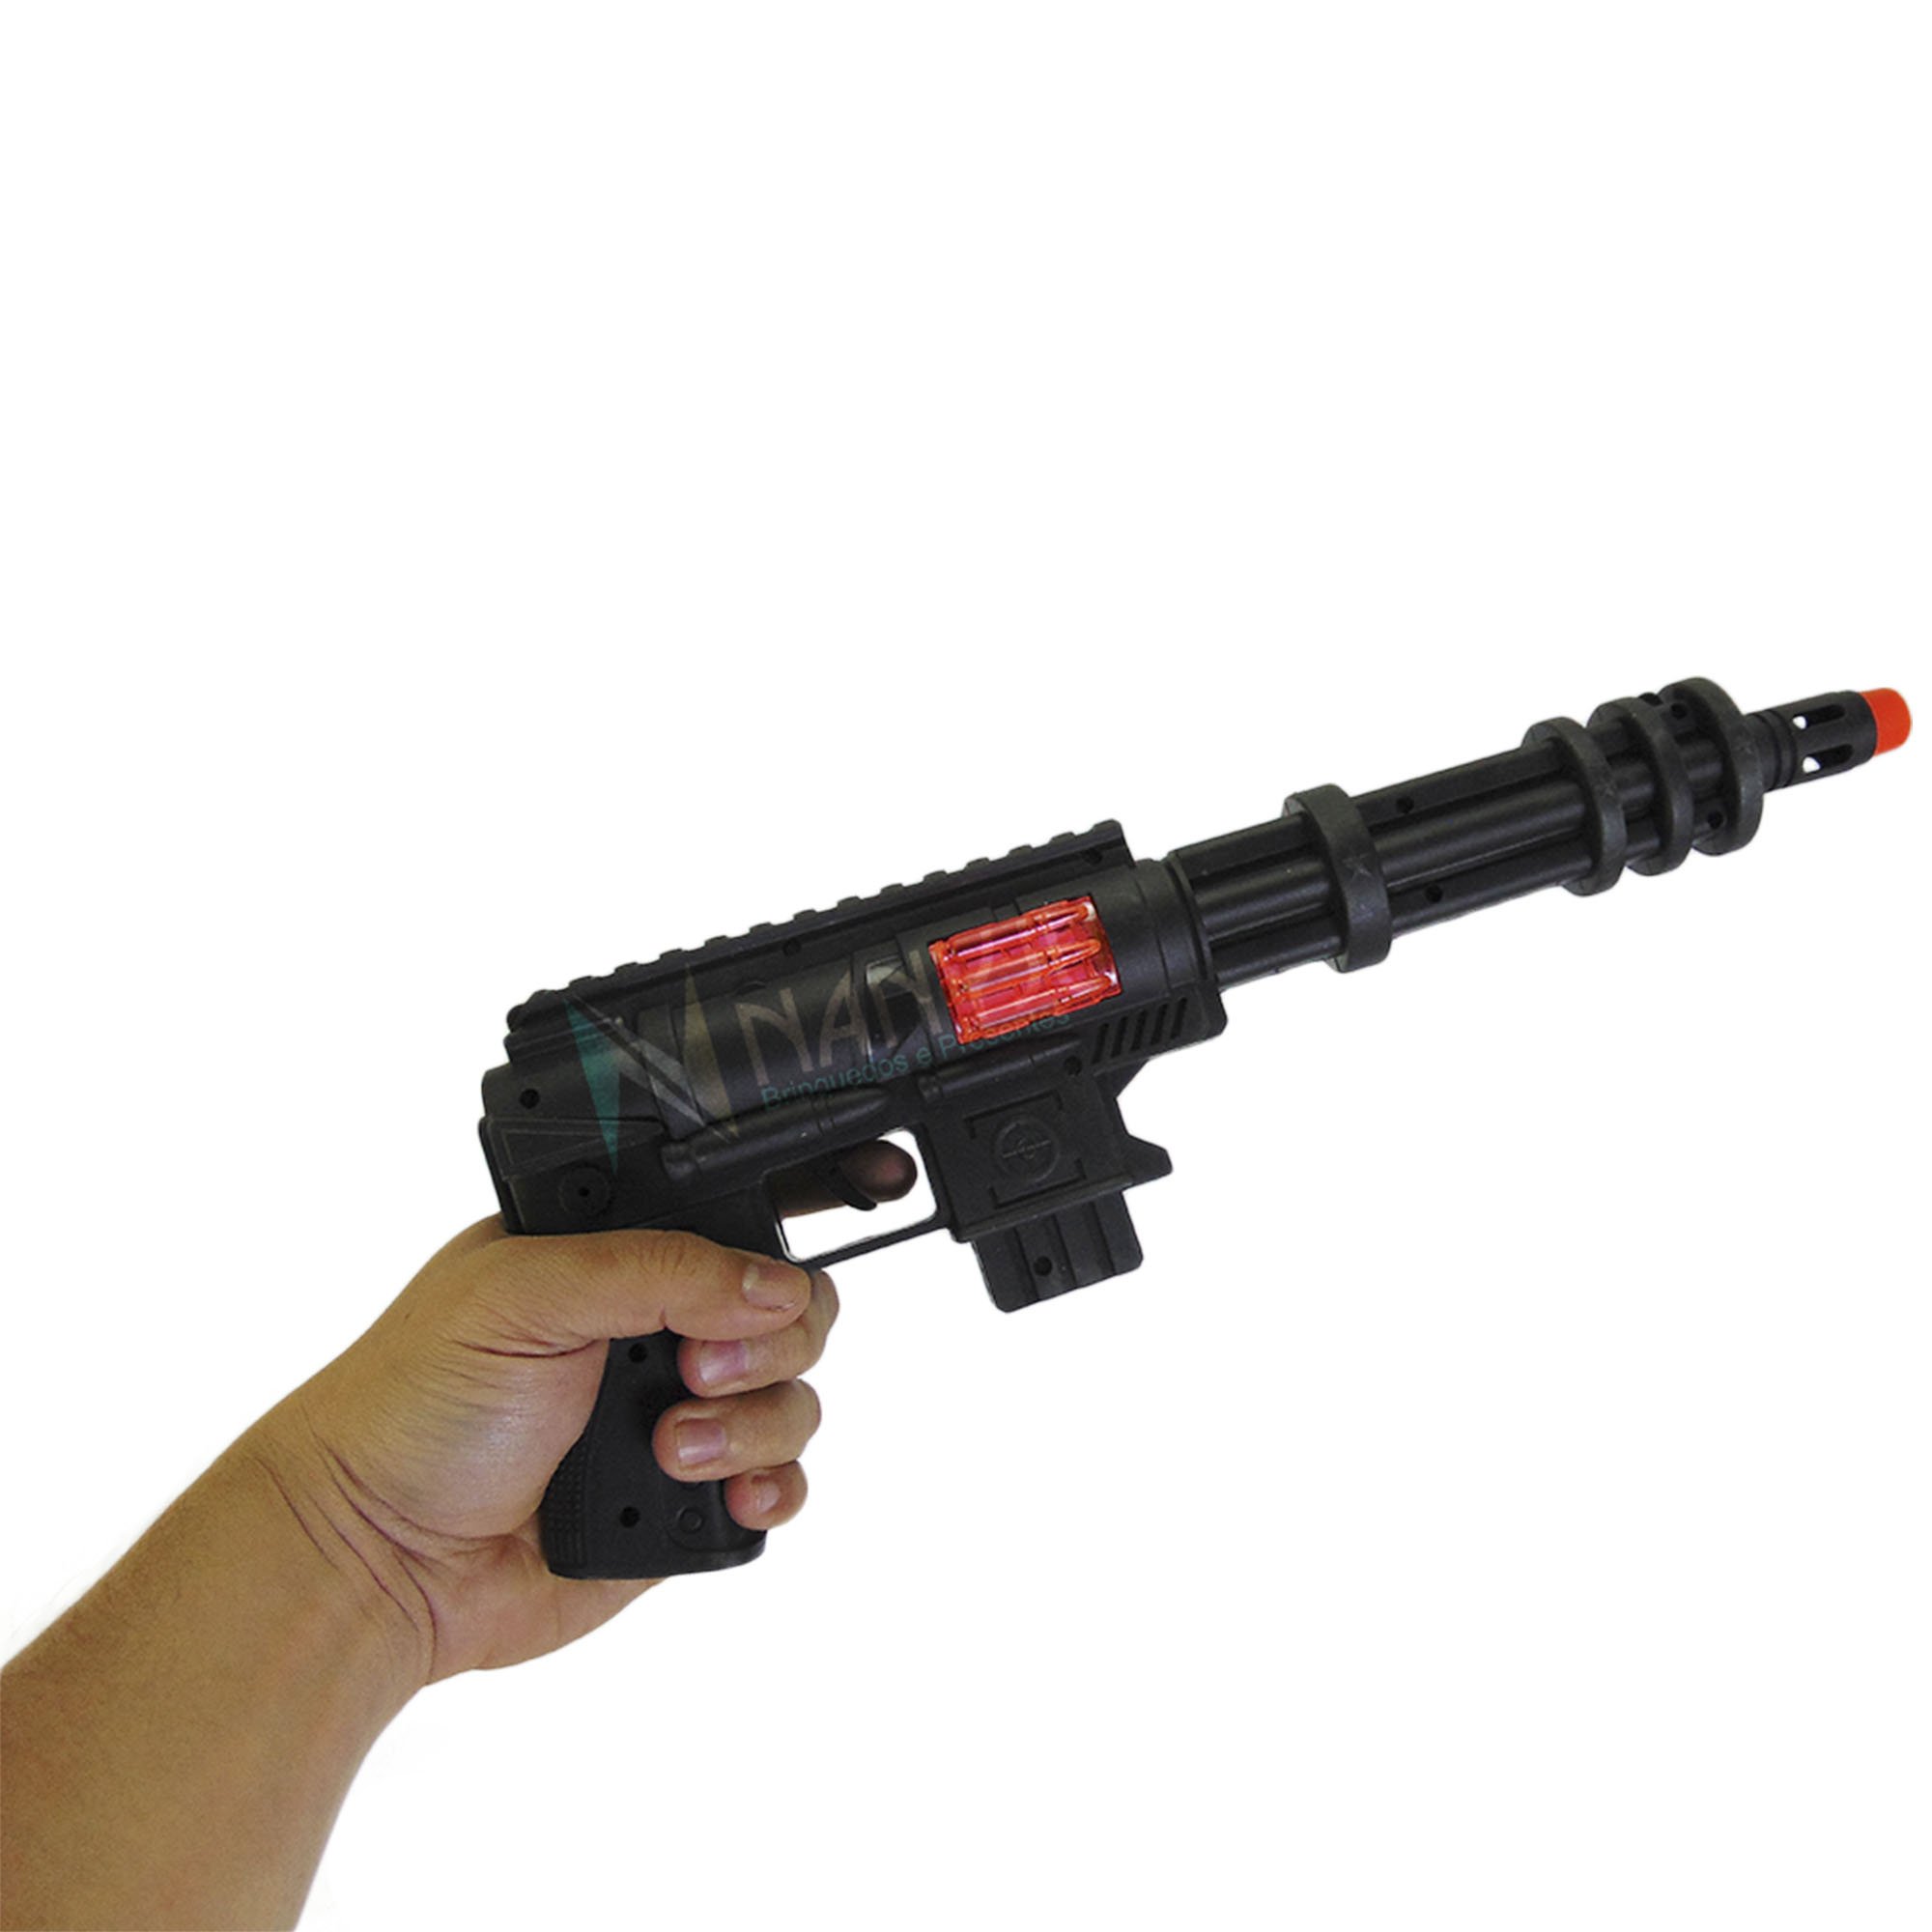 Arma Metralhadora De Brinquedo Som Friccao - Desconto no Preço